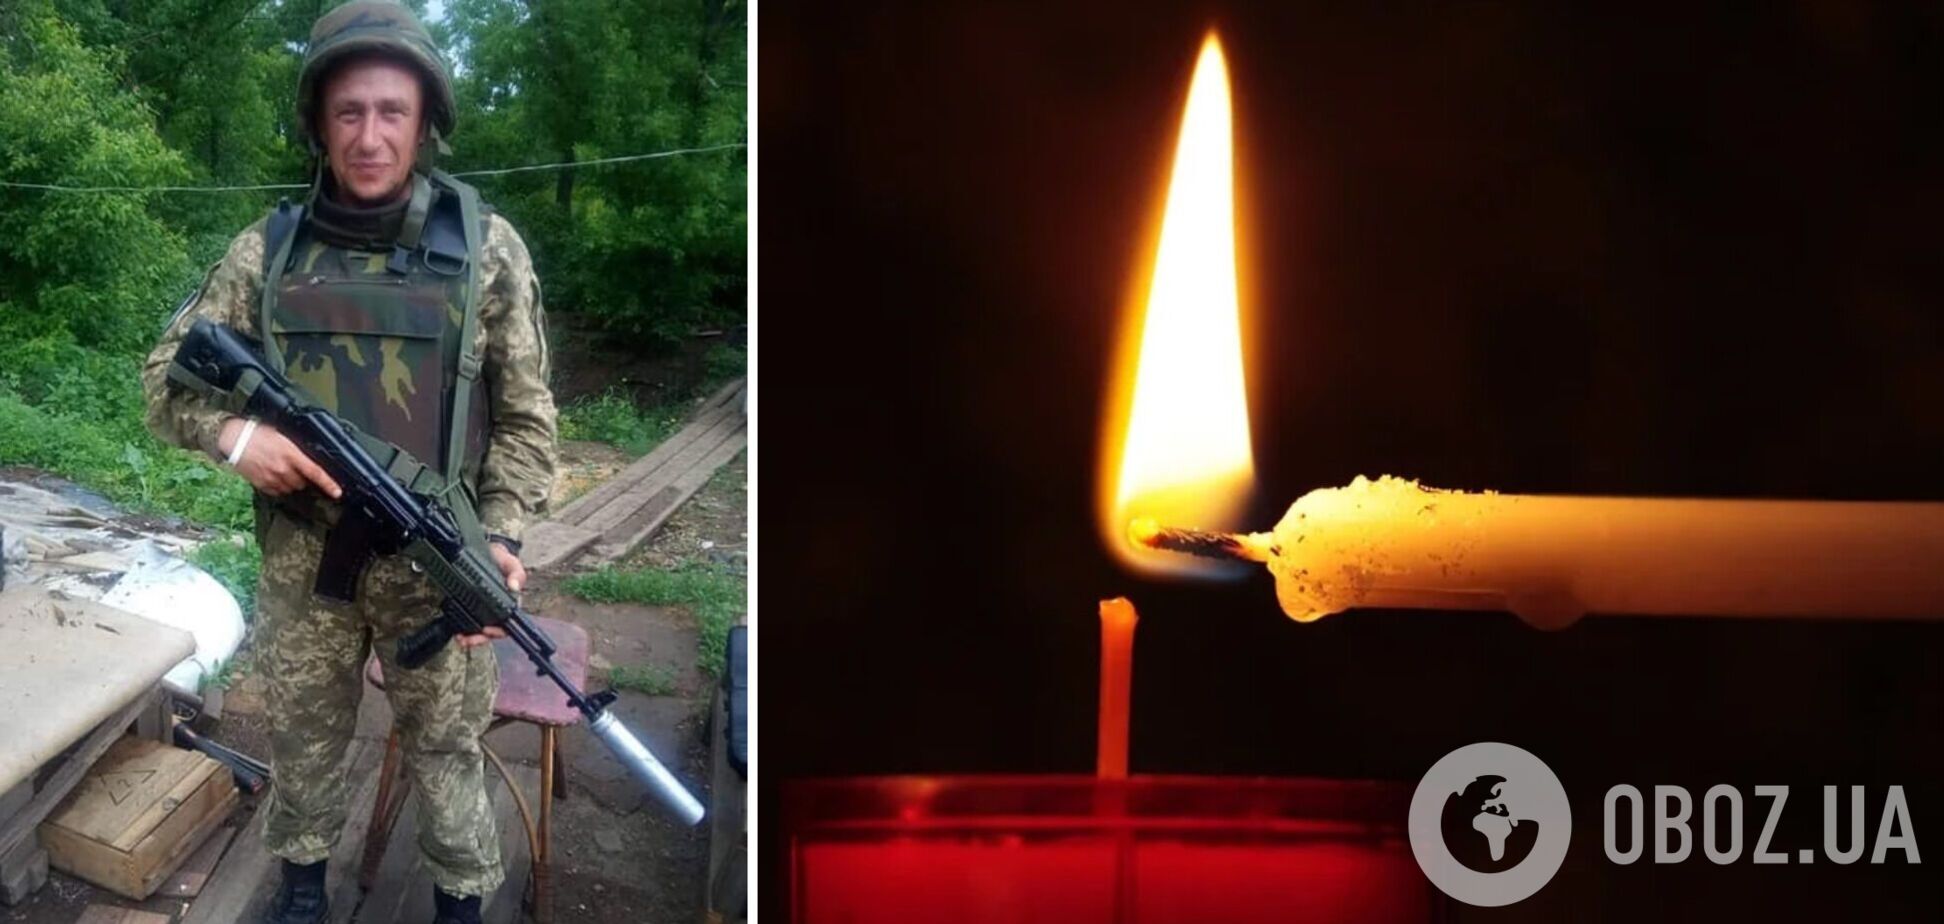 Названо ім'я бійця ЗСУ, який загинув на Донбасі: у нього залишився син. Фото